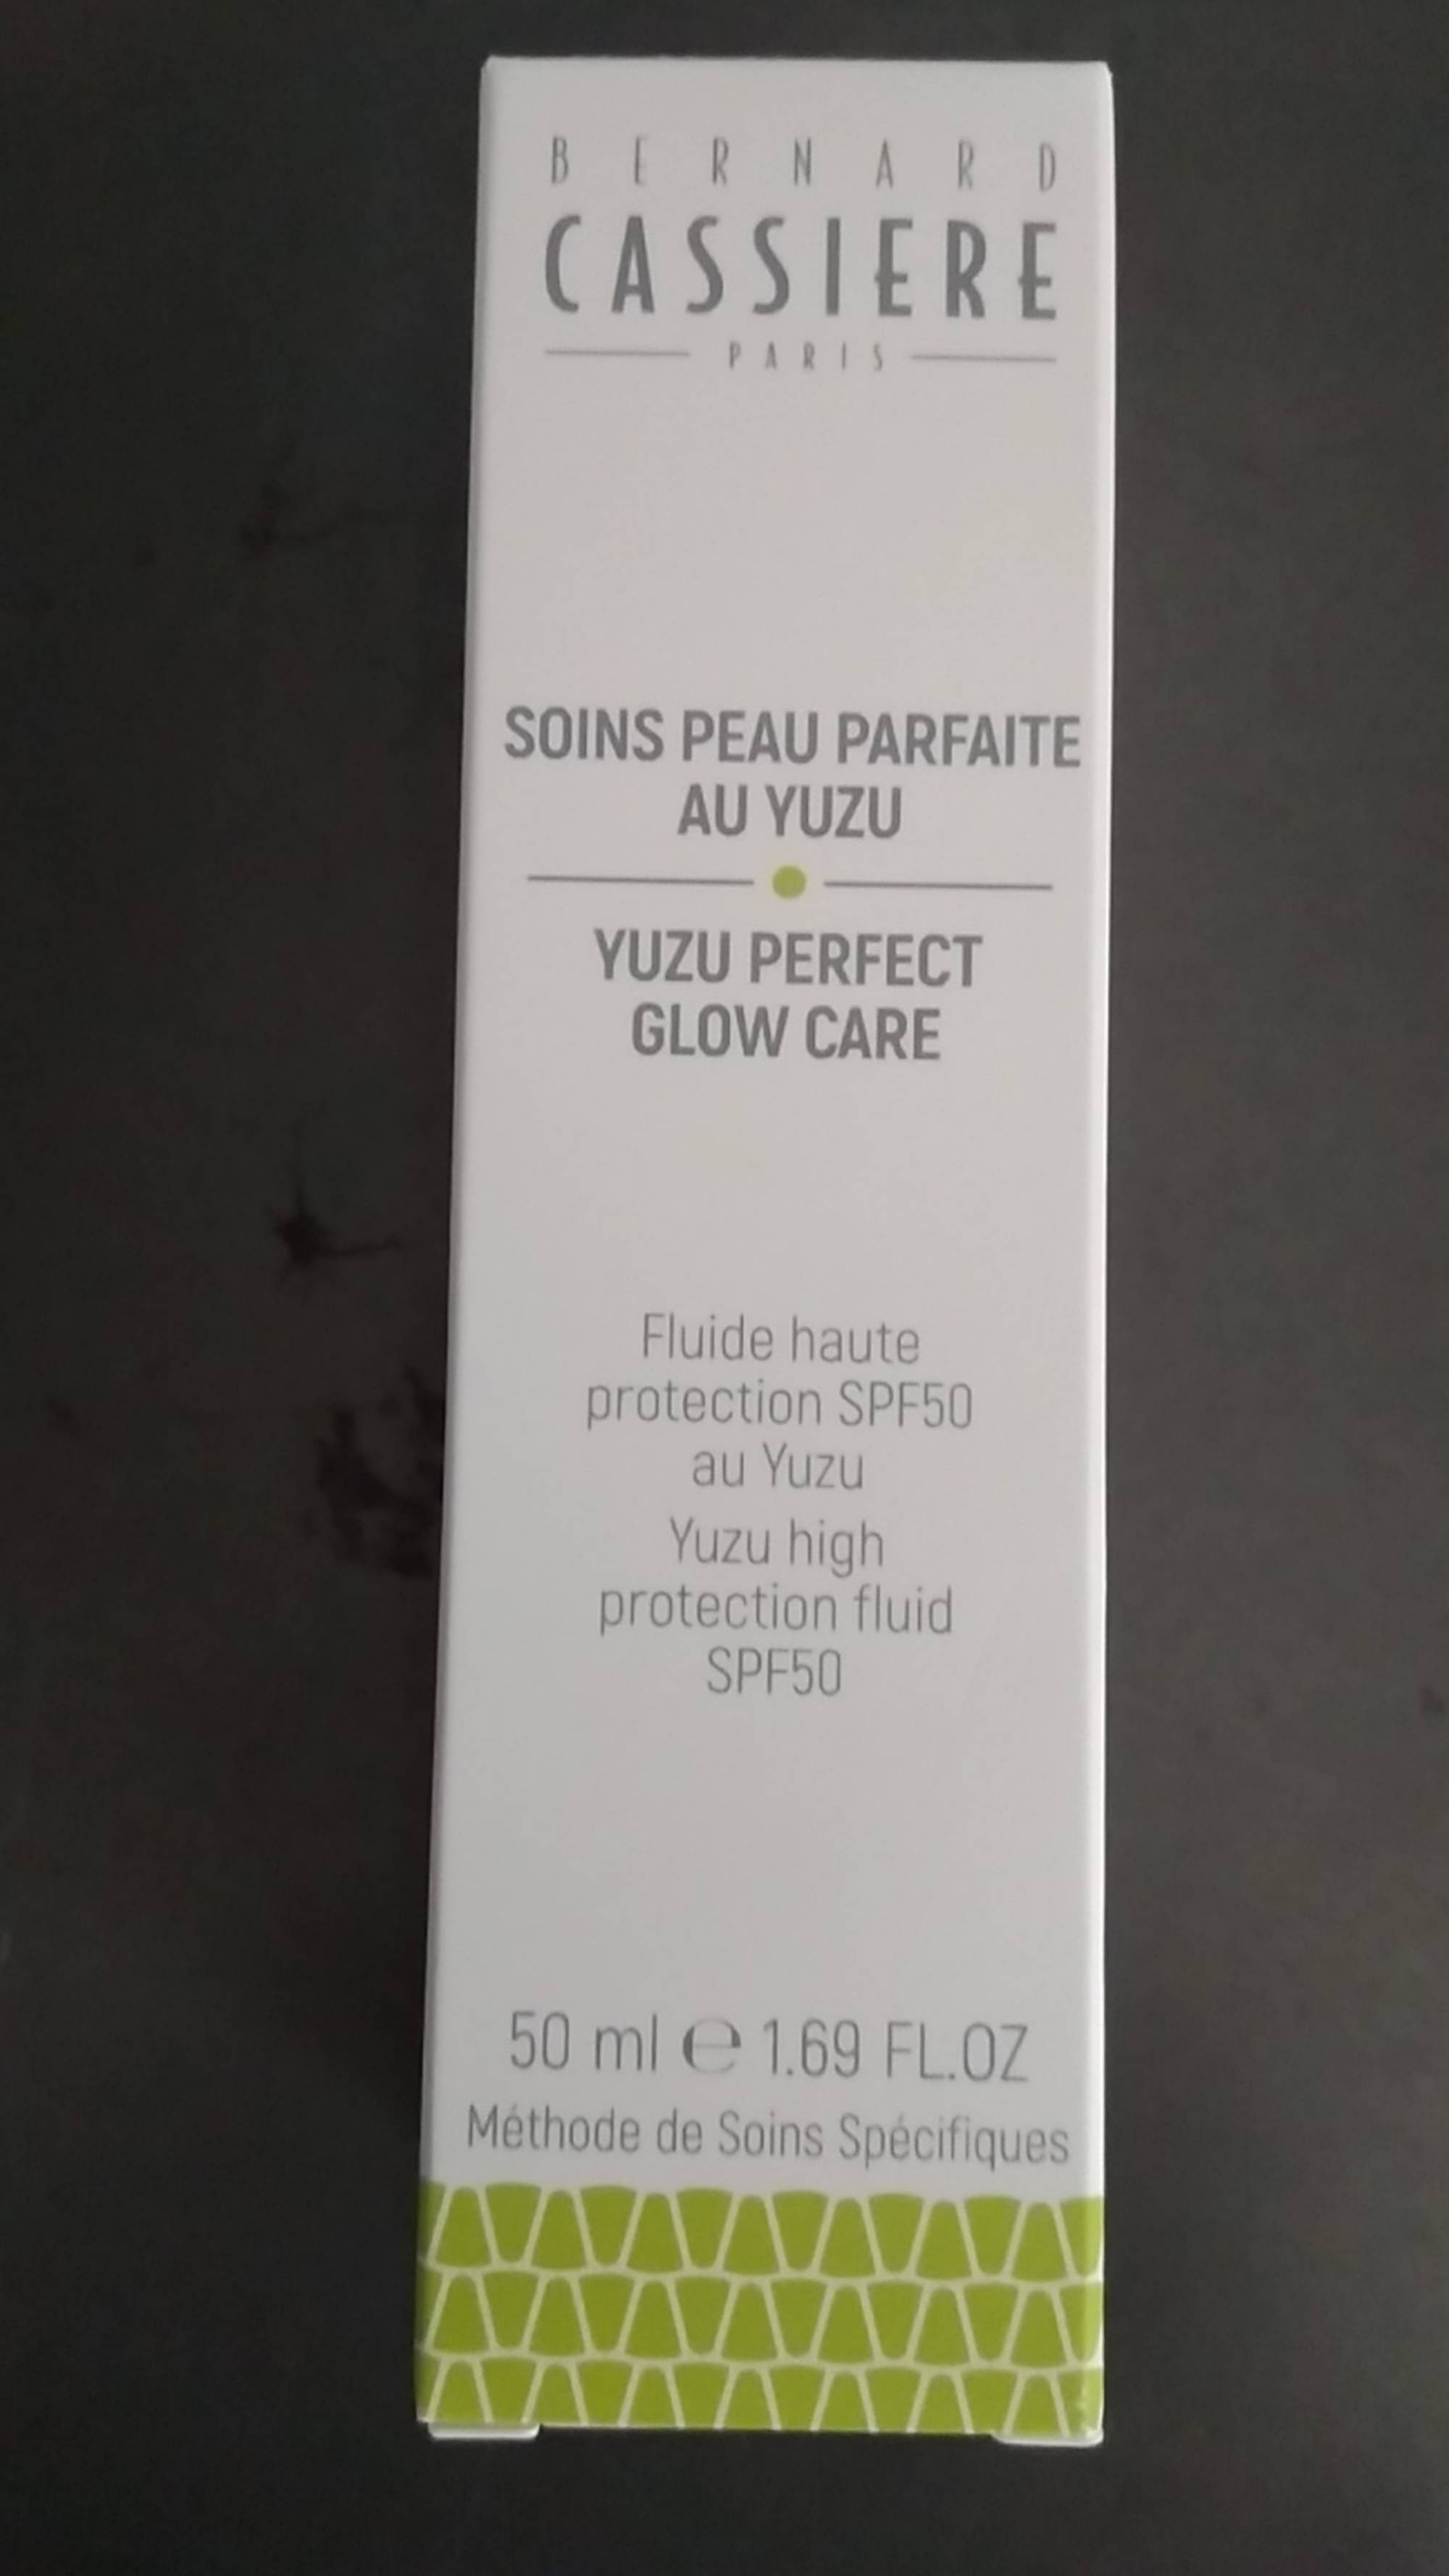 BERNARD CASSIÈRE - Soins peau parfaite au yuzu - Fluide haute protection SPF 50